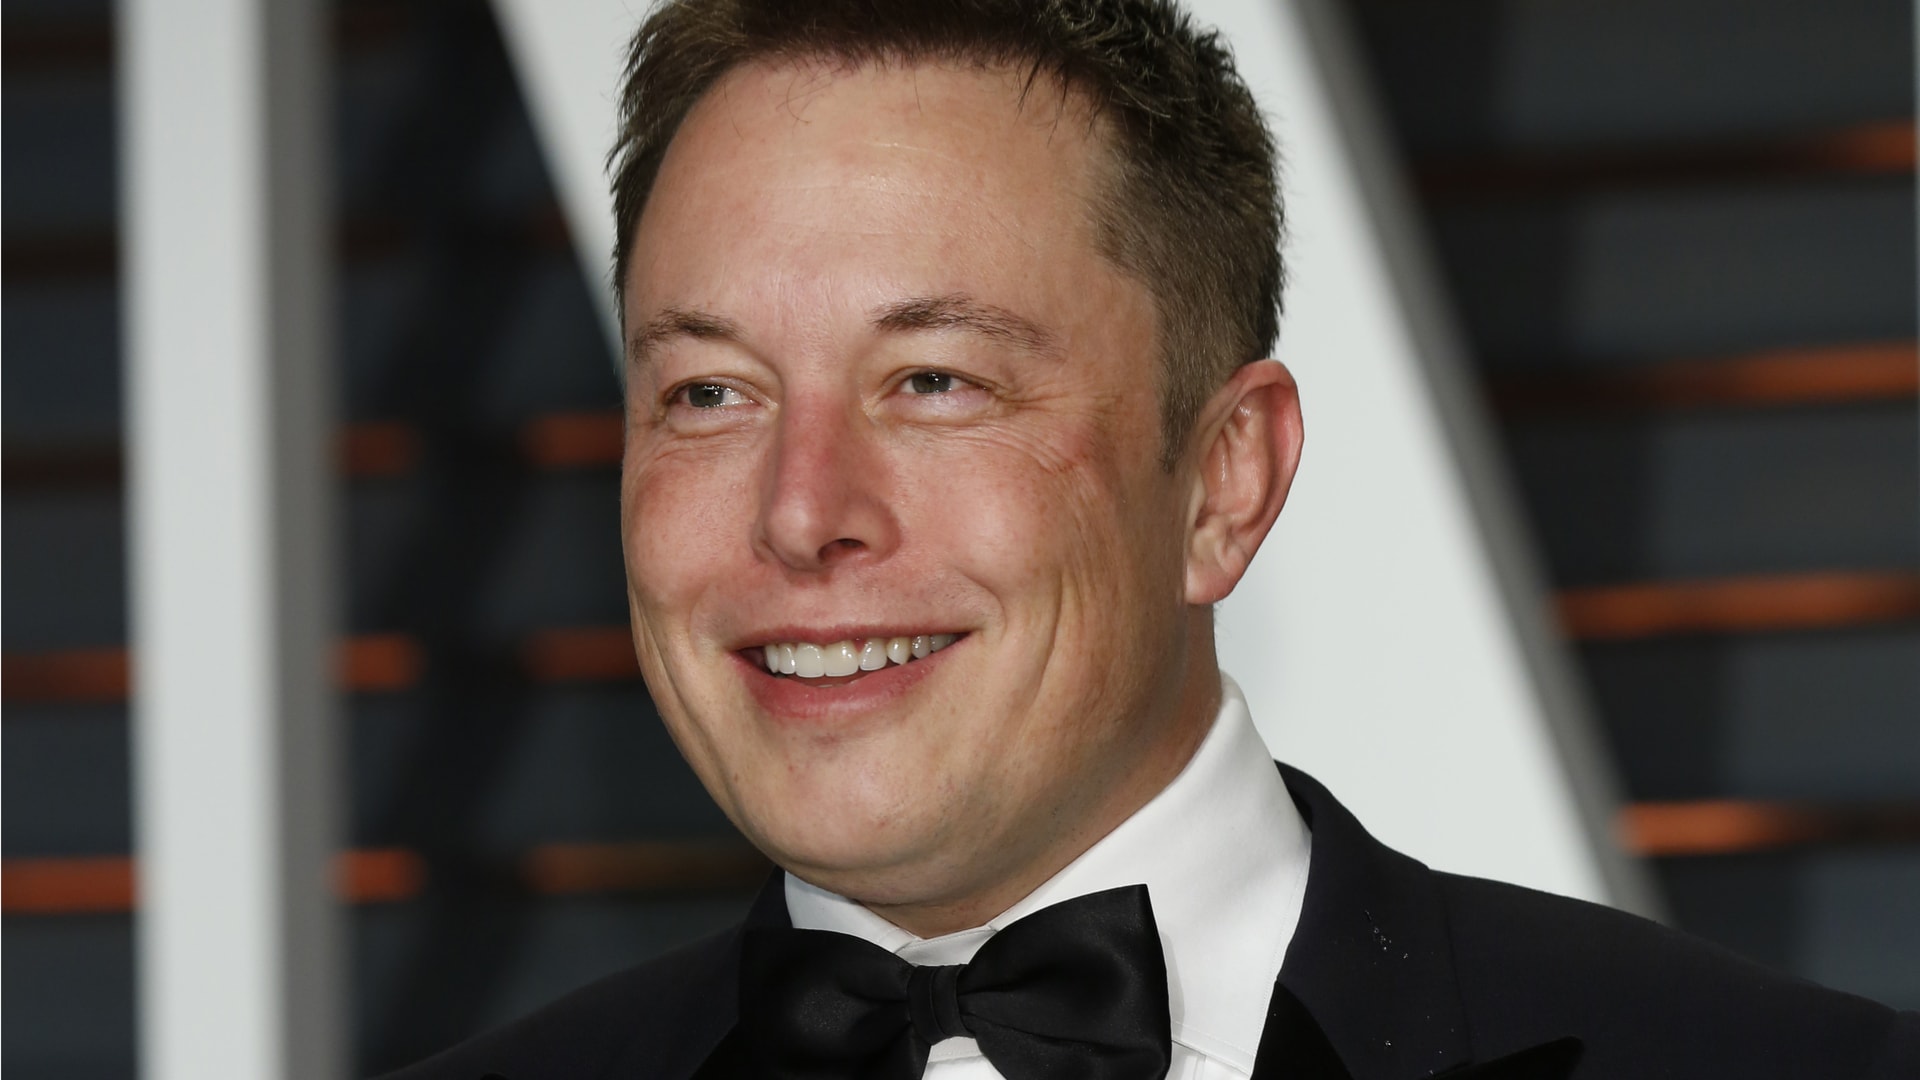 Basogintza Internet konkistatzen du. Elon Musk-ek Treelon izenarekin aldatu zuen eta milioi bat zuhaitz sortu zituen